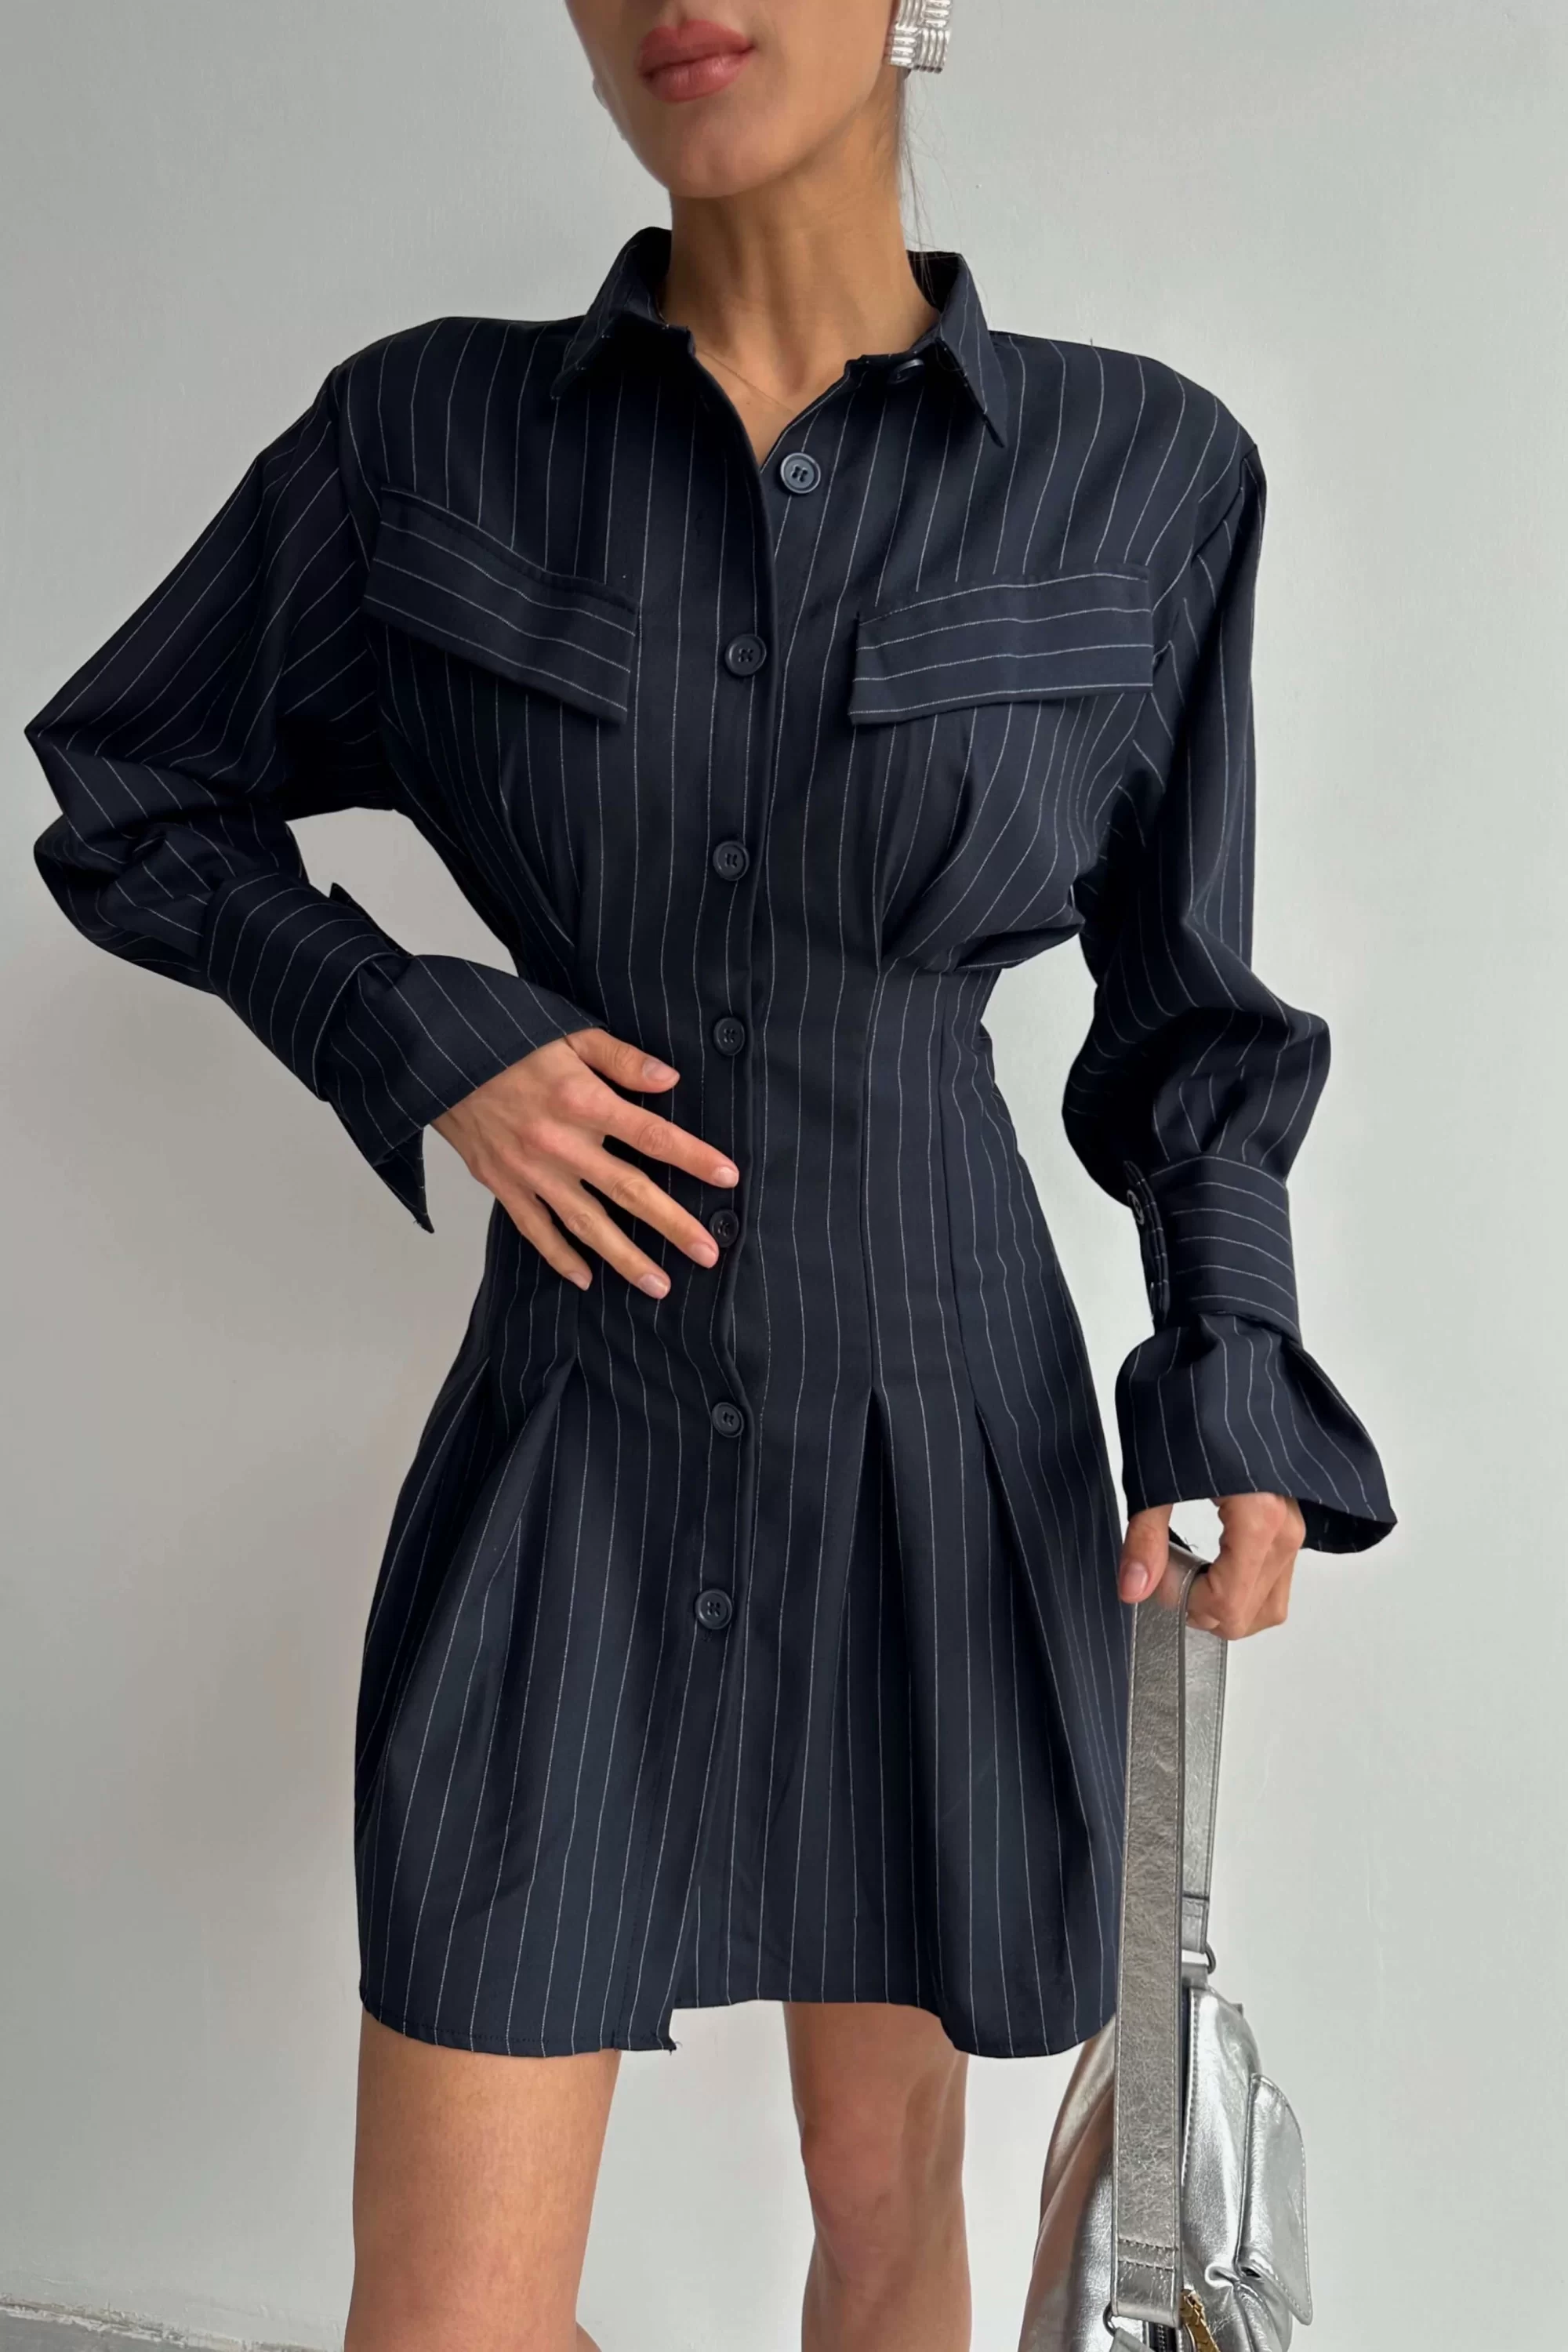 Kadın Lacivert Çizgili Gömlek Elbise 0990-241042